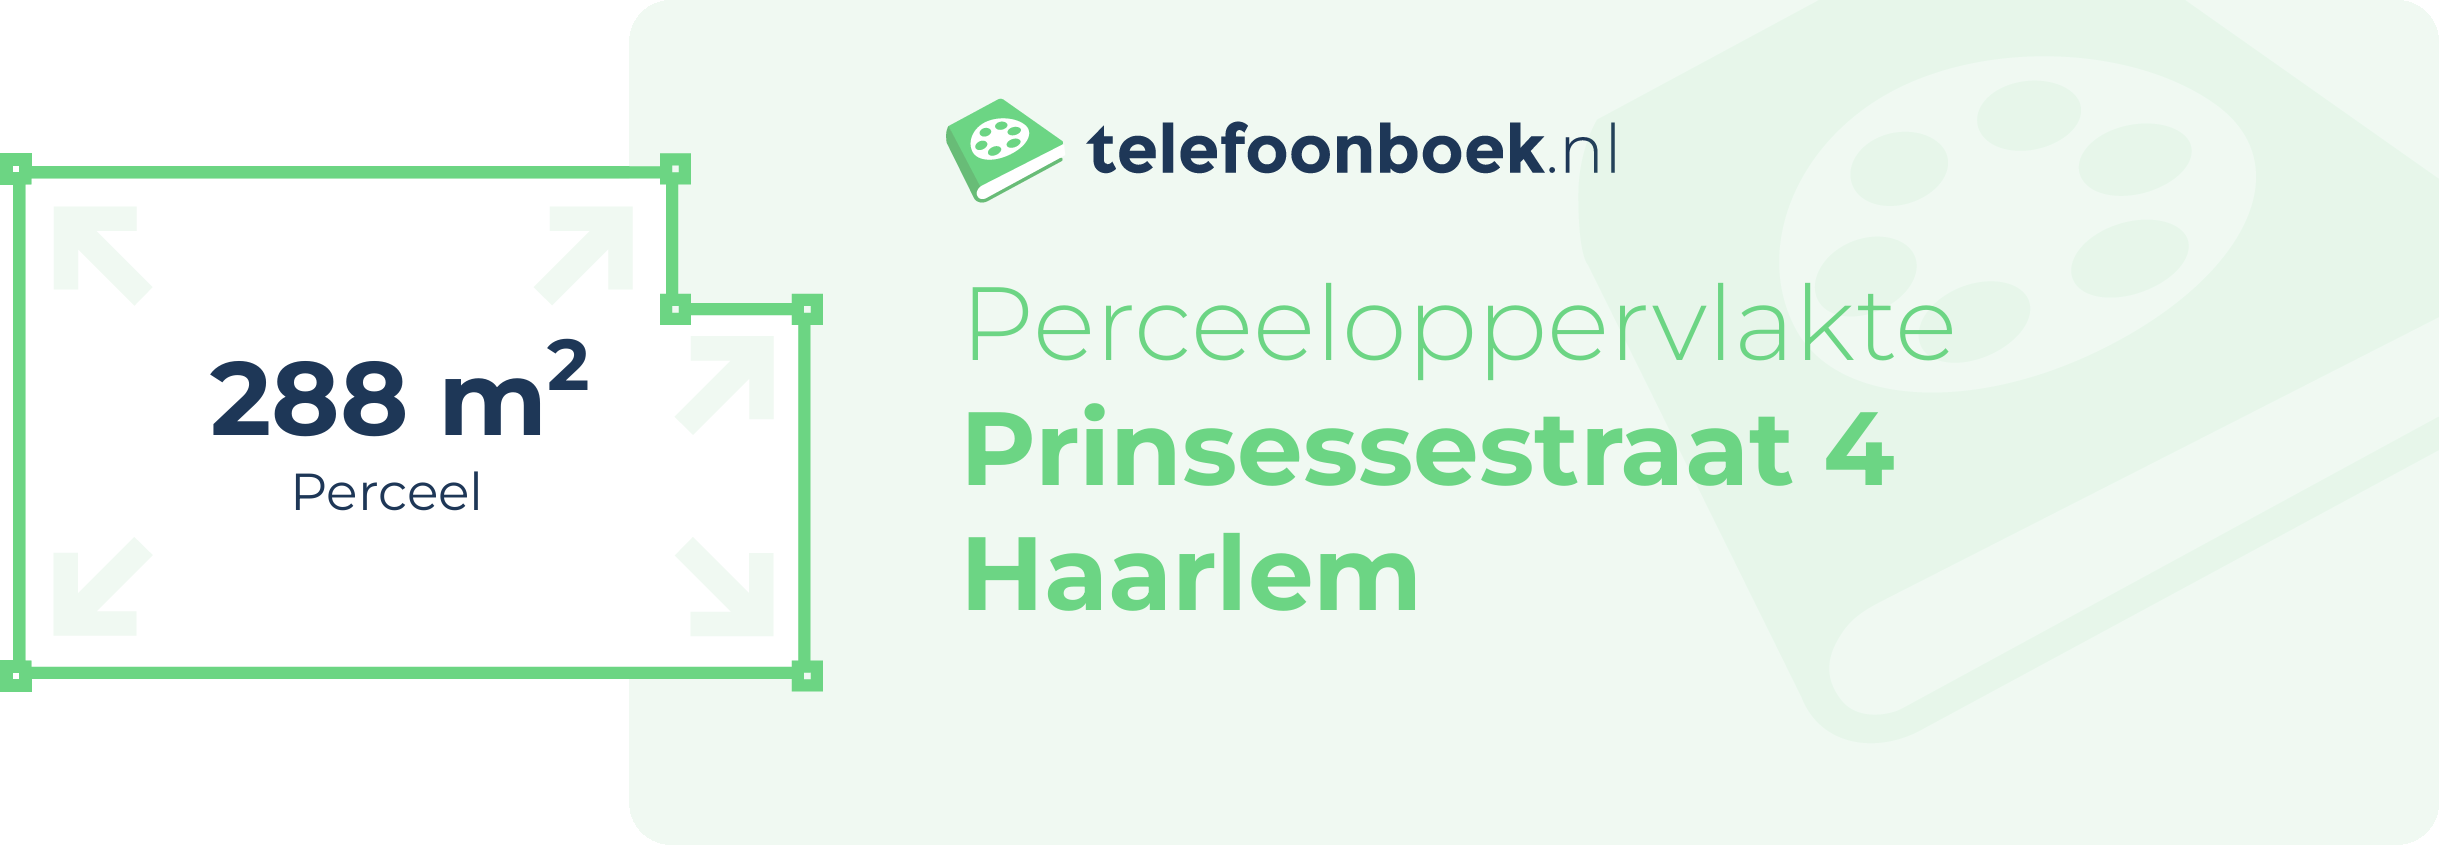 Perceeloppervlakte Prinsessestraat 4 Haarlem